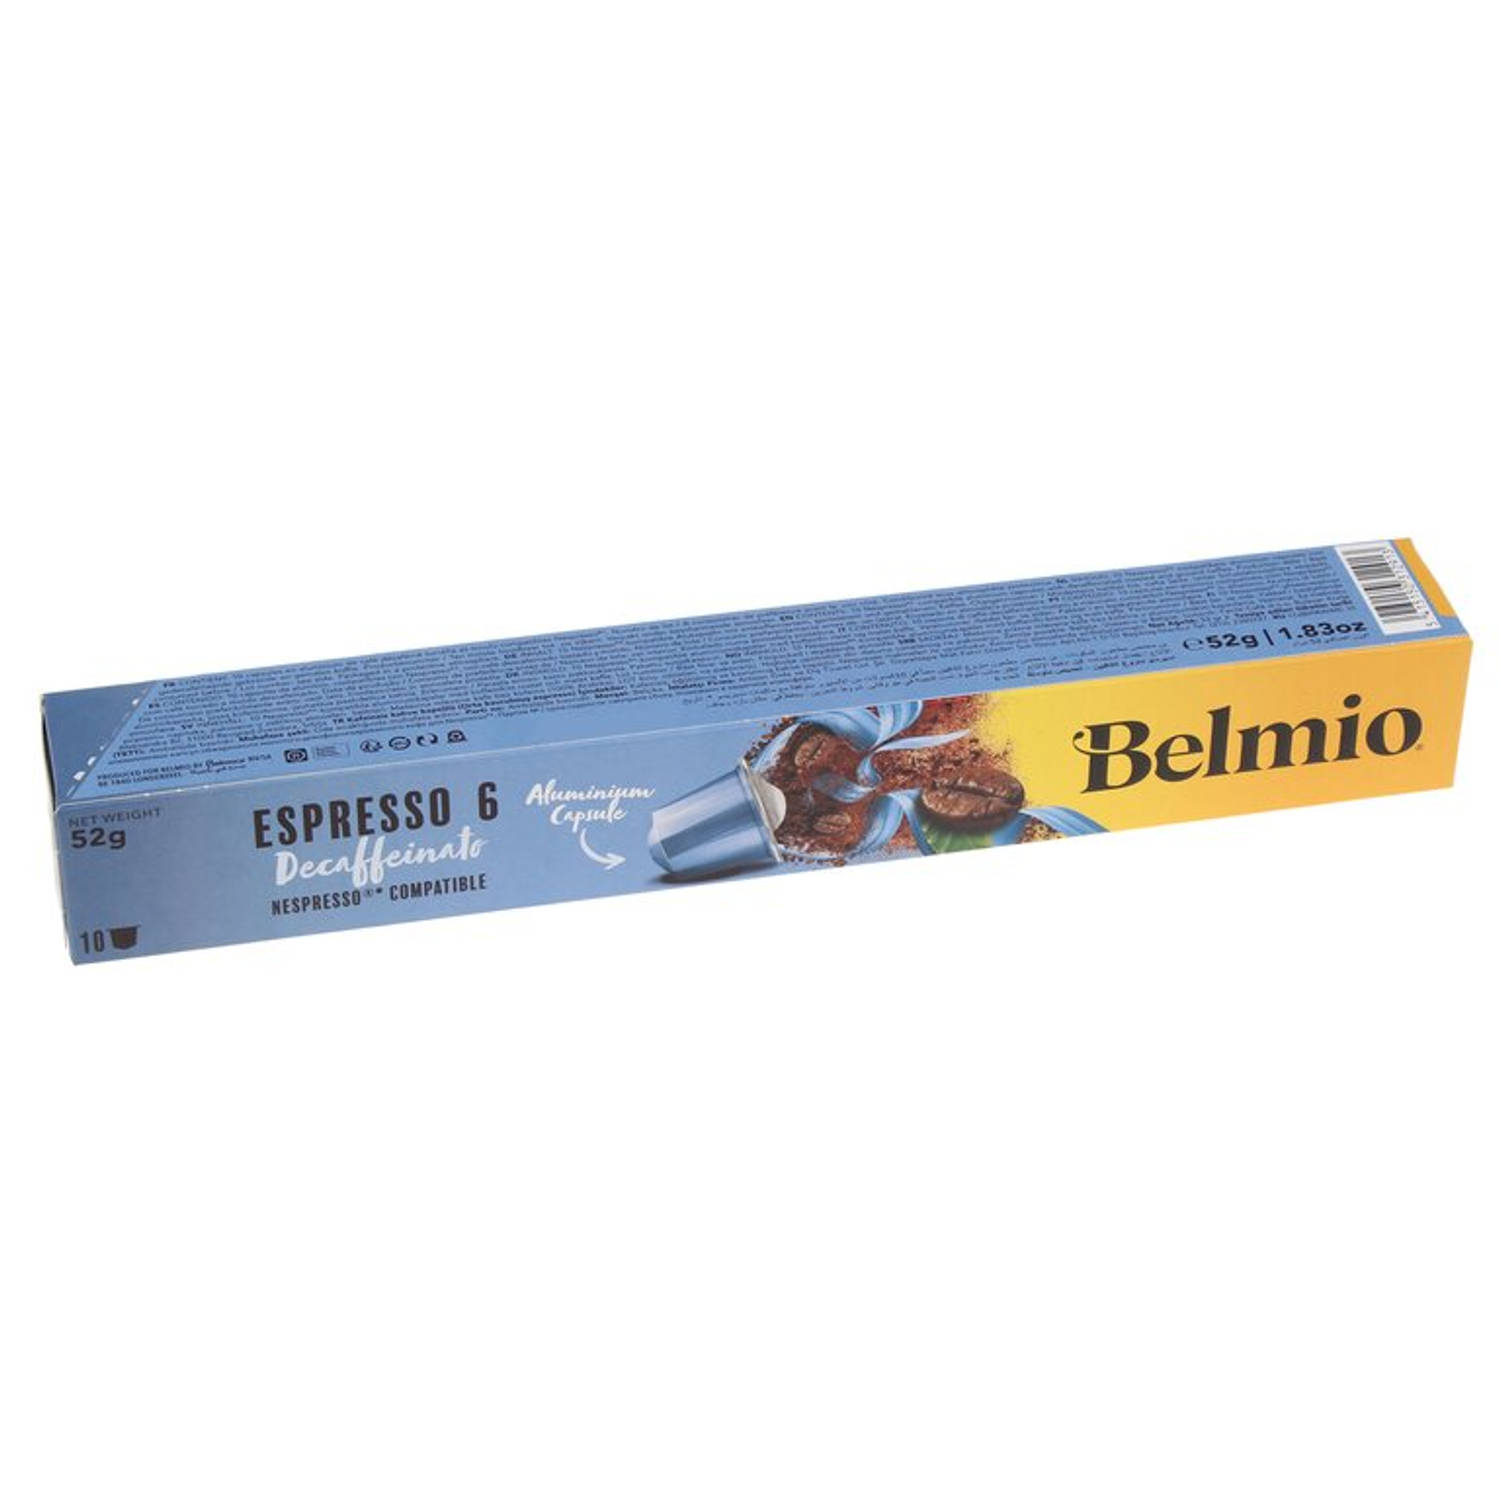 Belmio koffie capsules Nespresso Espresso Decaf 10 stuks online kopen